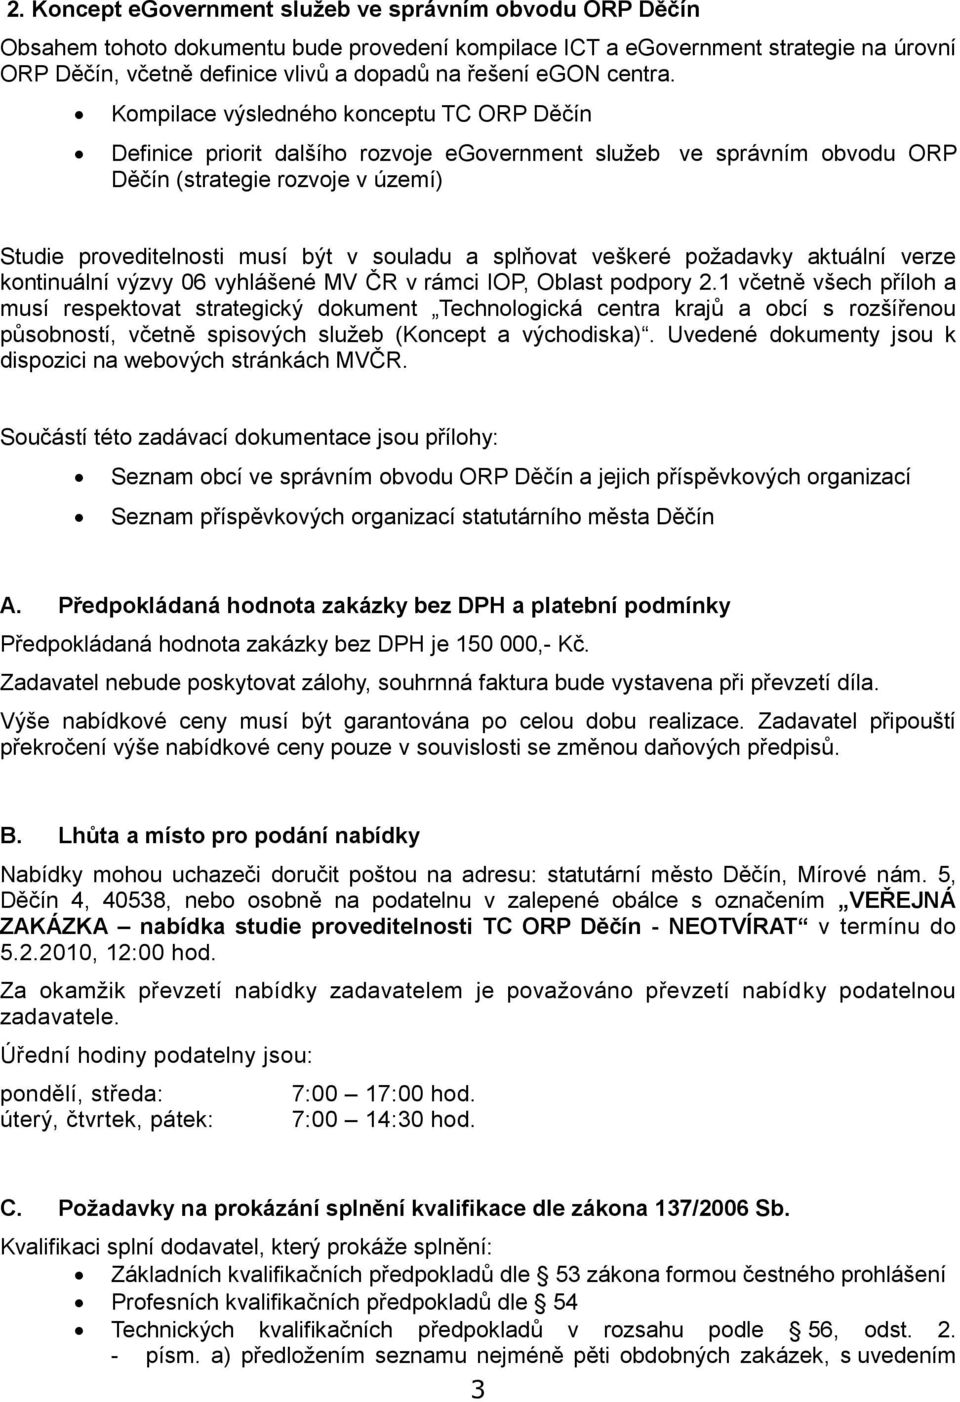 pžadavky aktuální verze kntinuální výzvy 06 vyhlášené MV ČR v rámci IOP, Oblast pdpry 2.